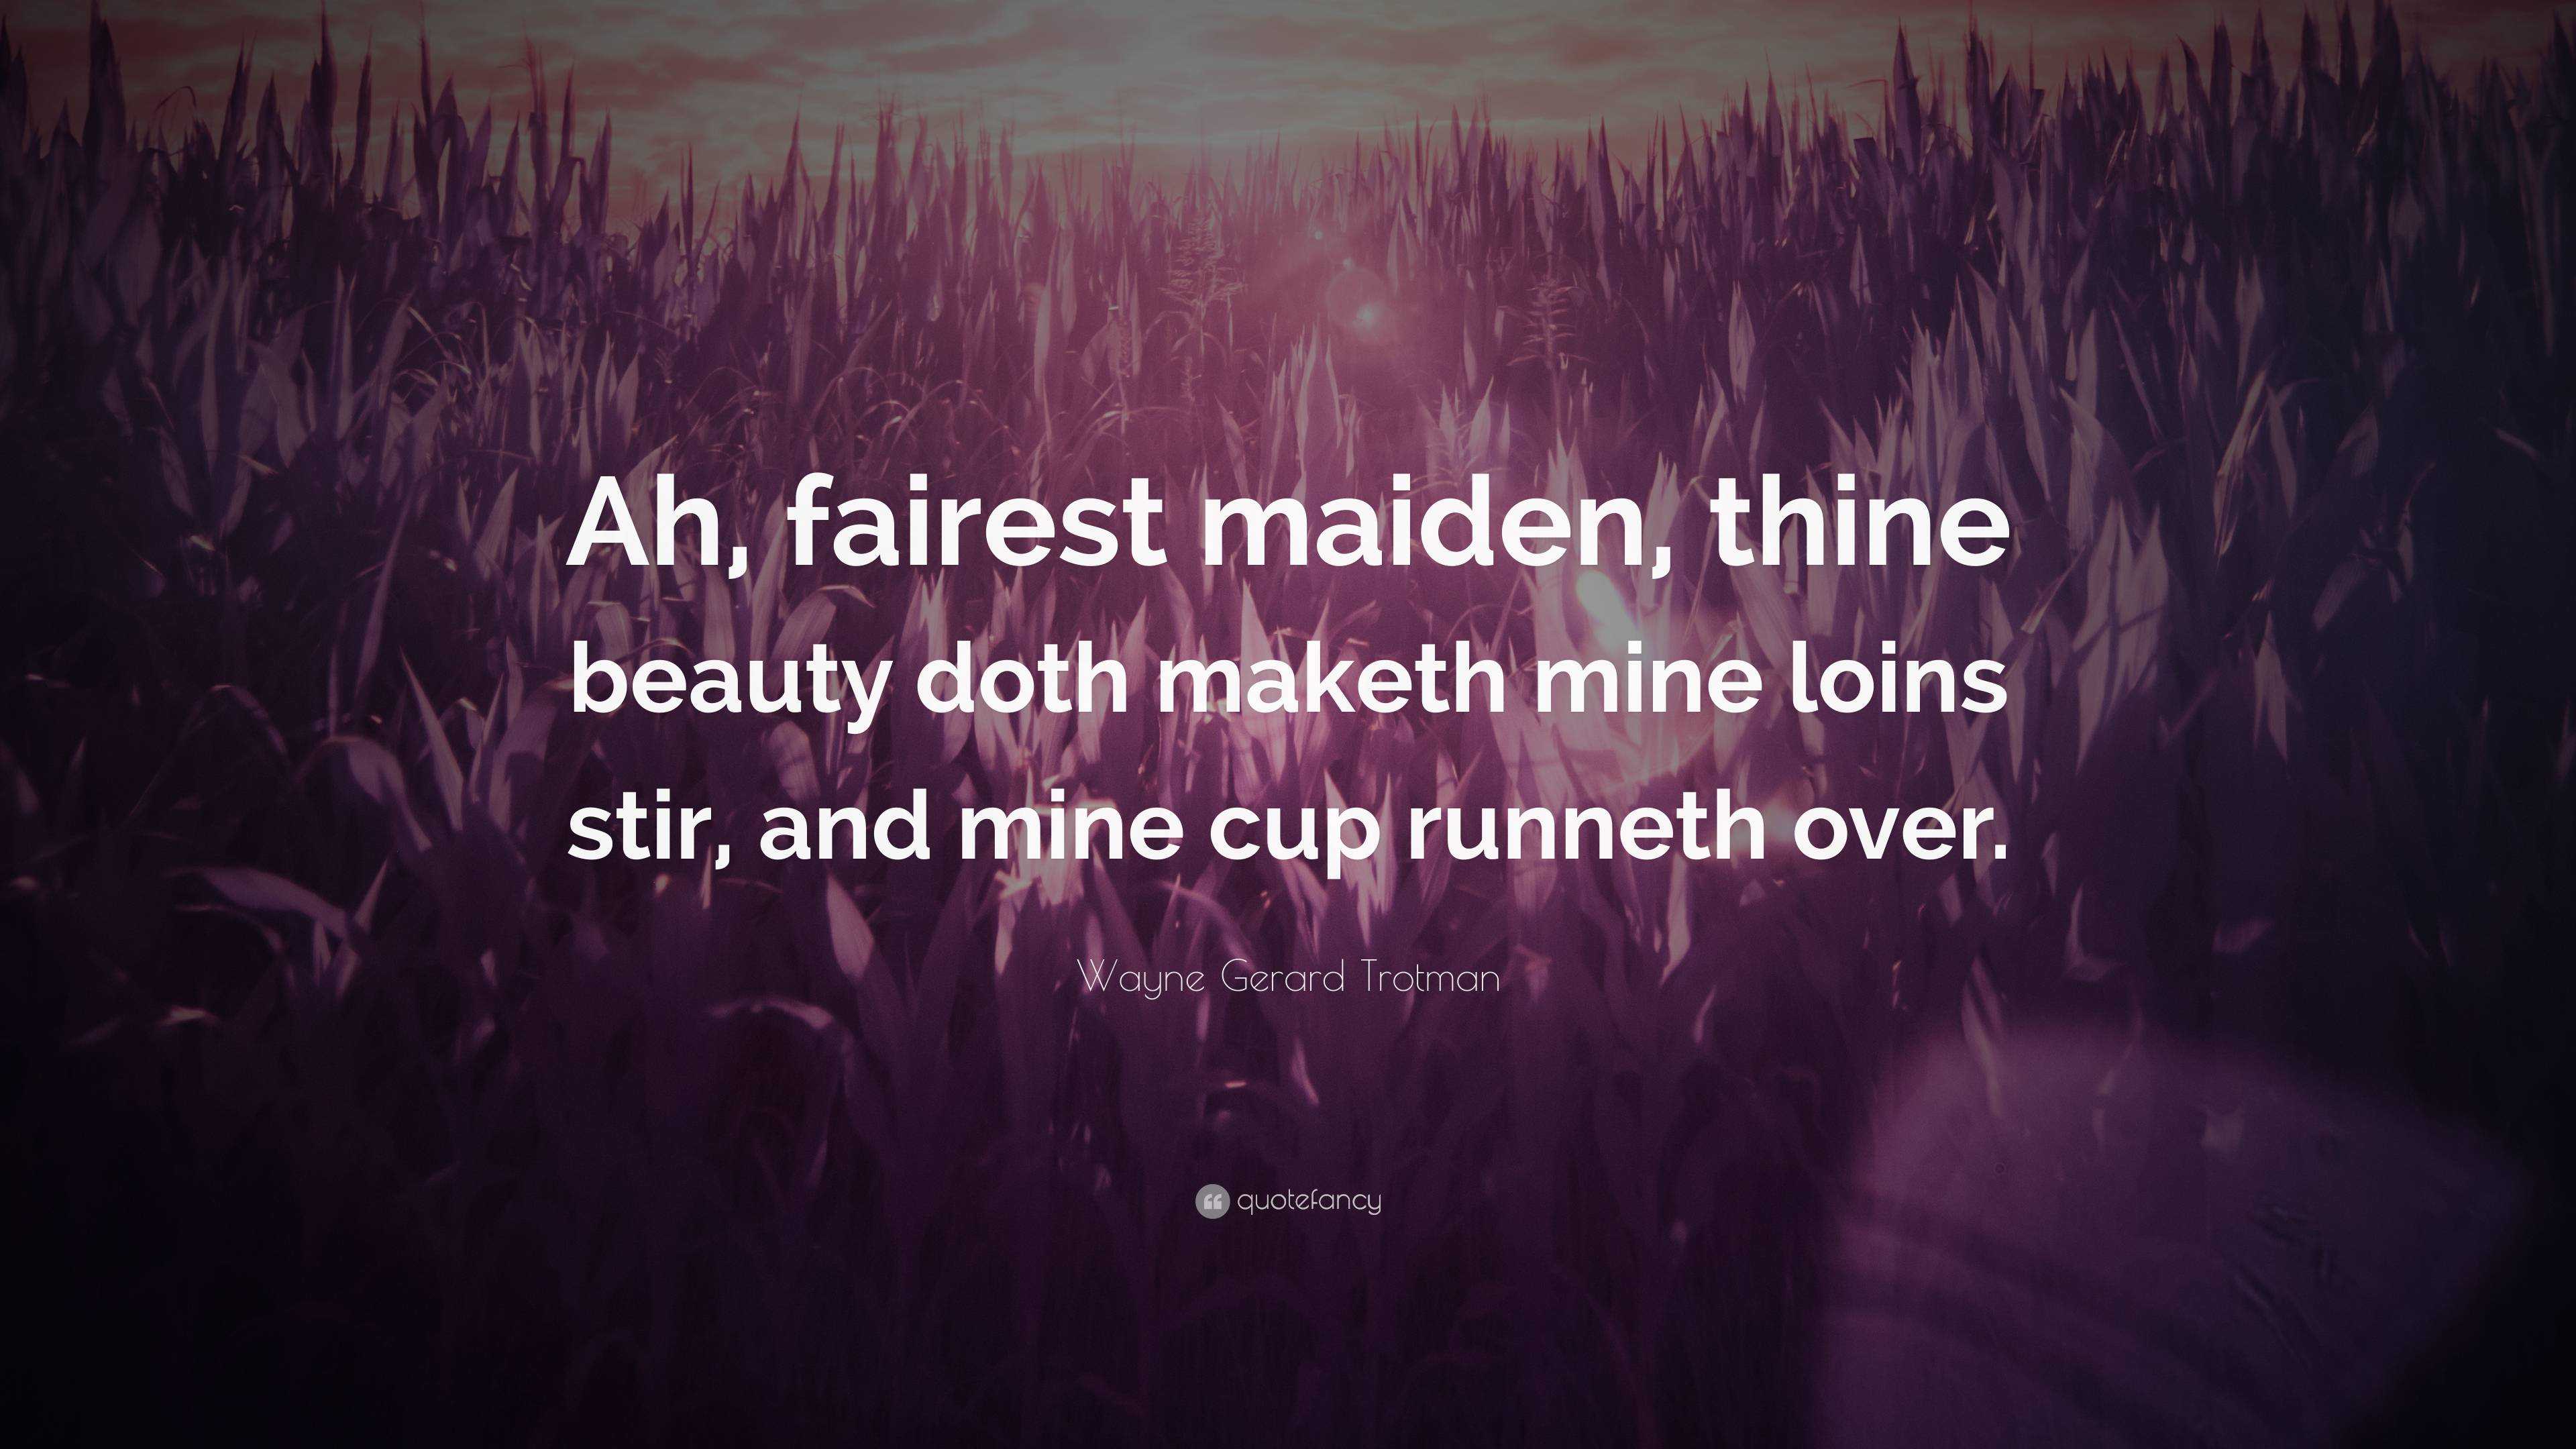 Wayne Gerard Trotman Quote: “Ah, fairest maiden, thine beauty doth maketh  mine loins stir, and mine